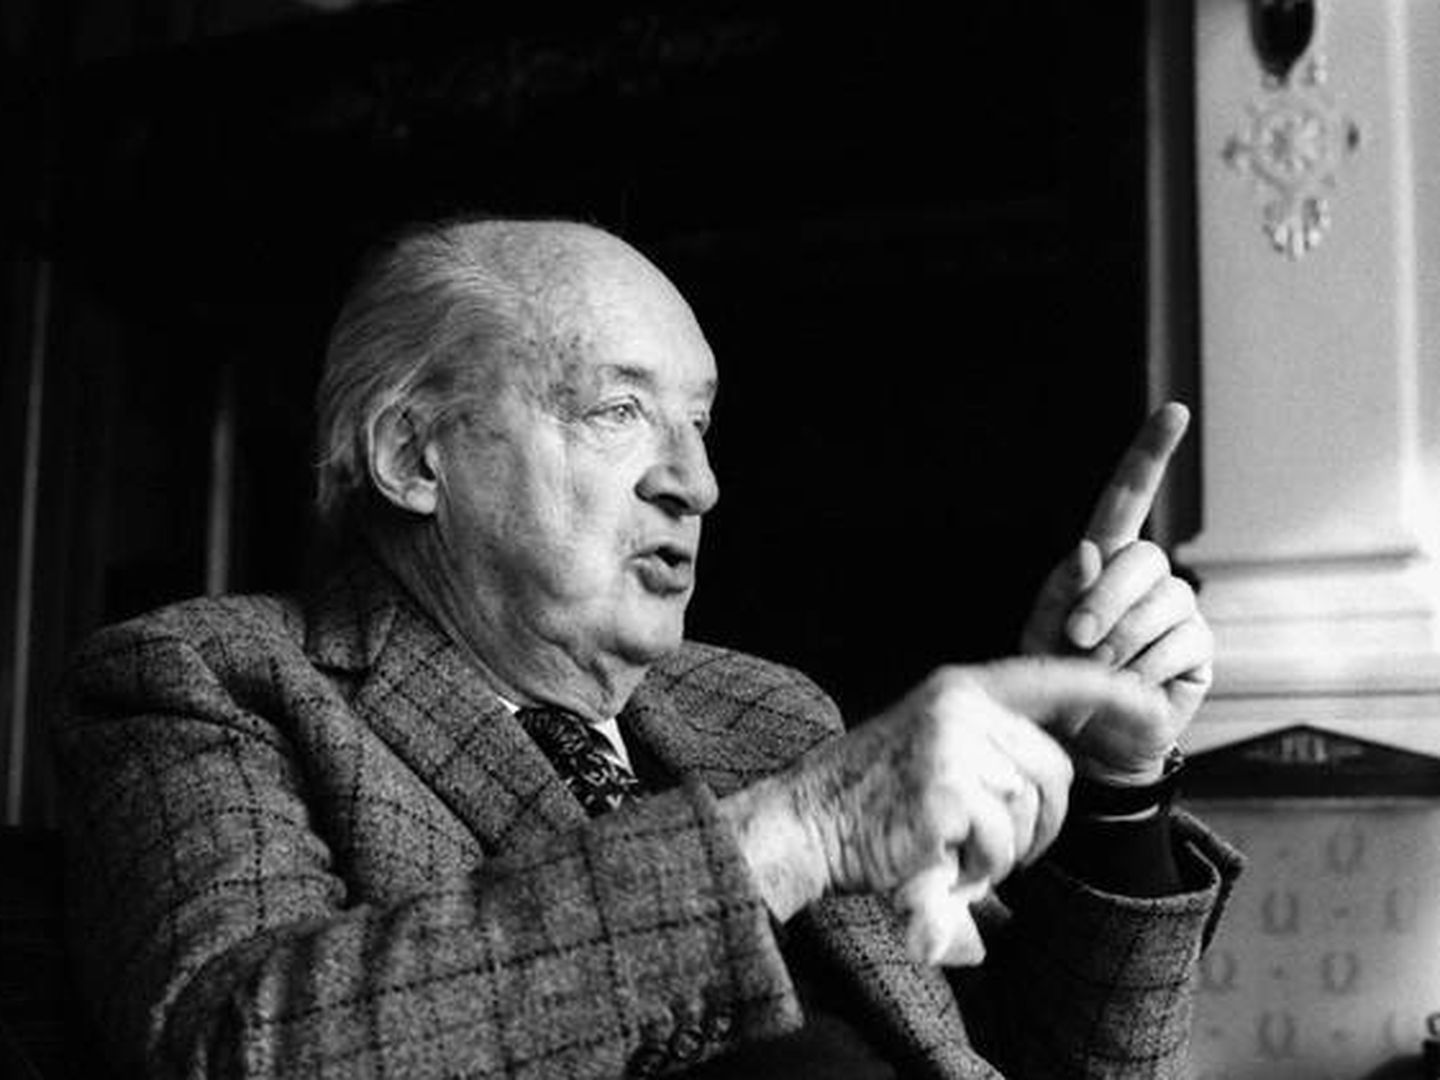  Vladimir Nabokov